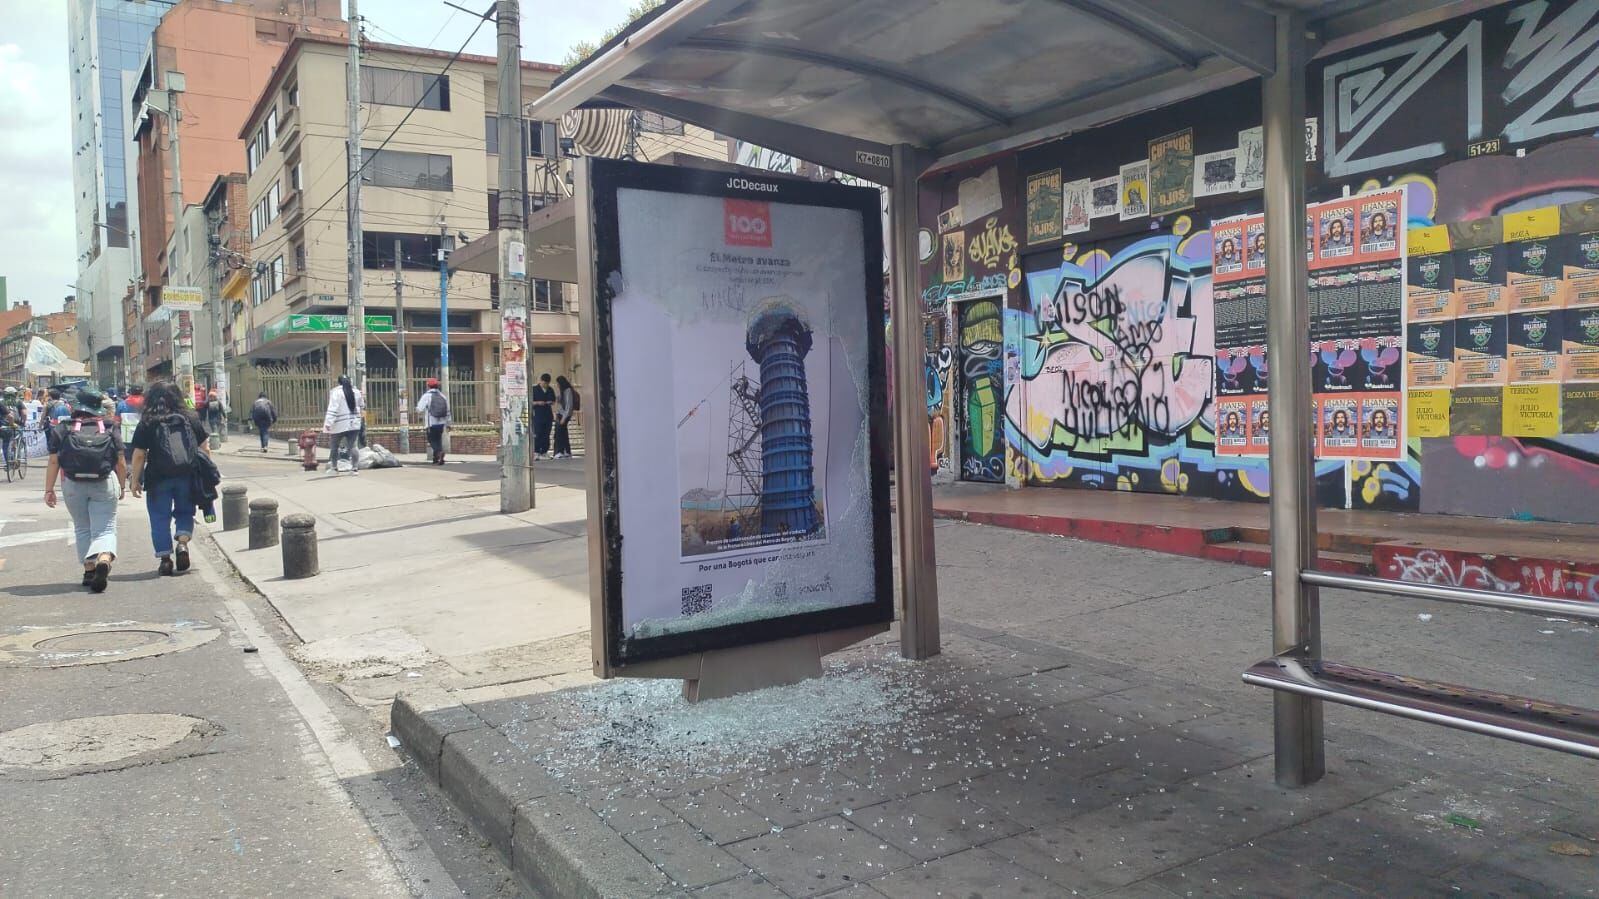 encapuchados causaron temor en bogotá: sedes bancarias, buses y negocios fueron vandalizados